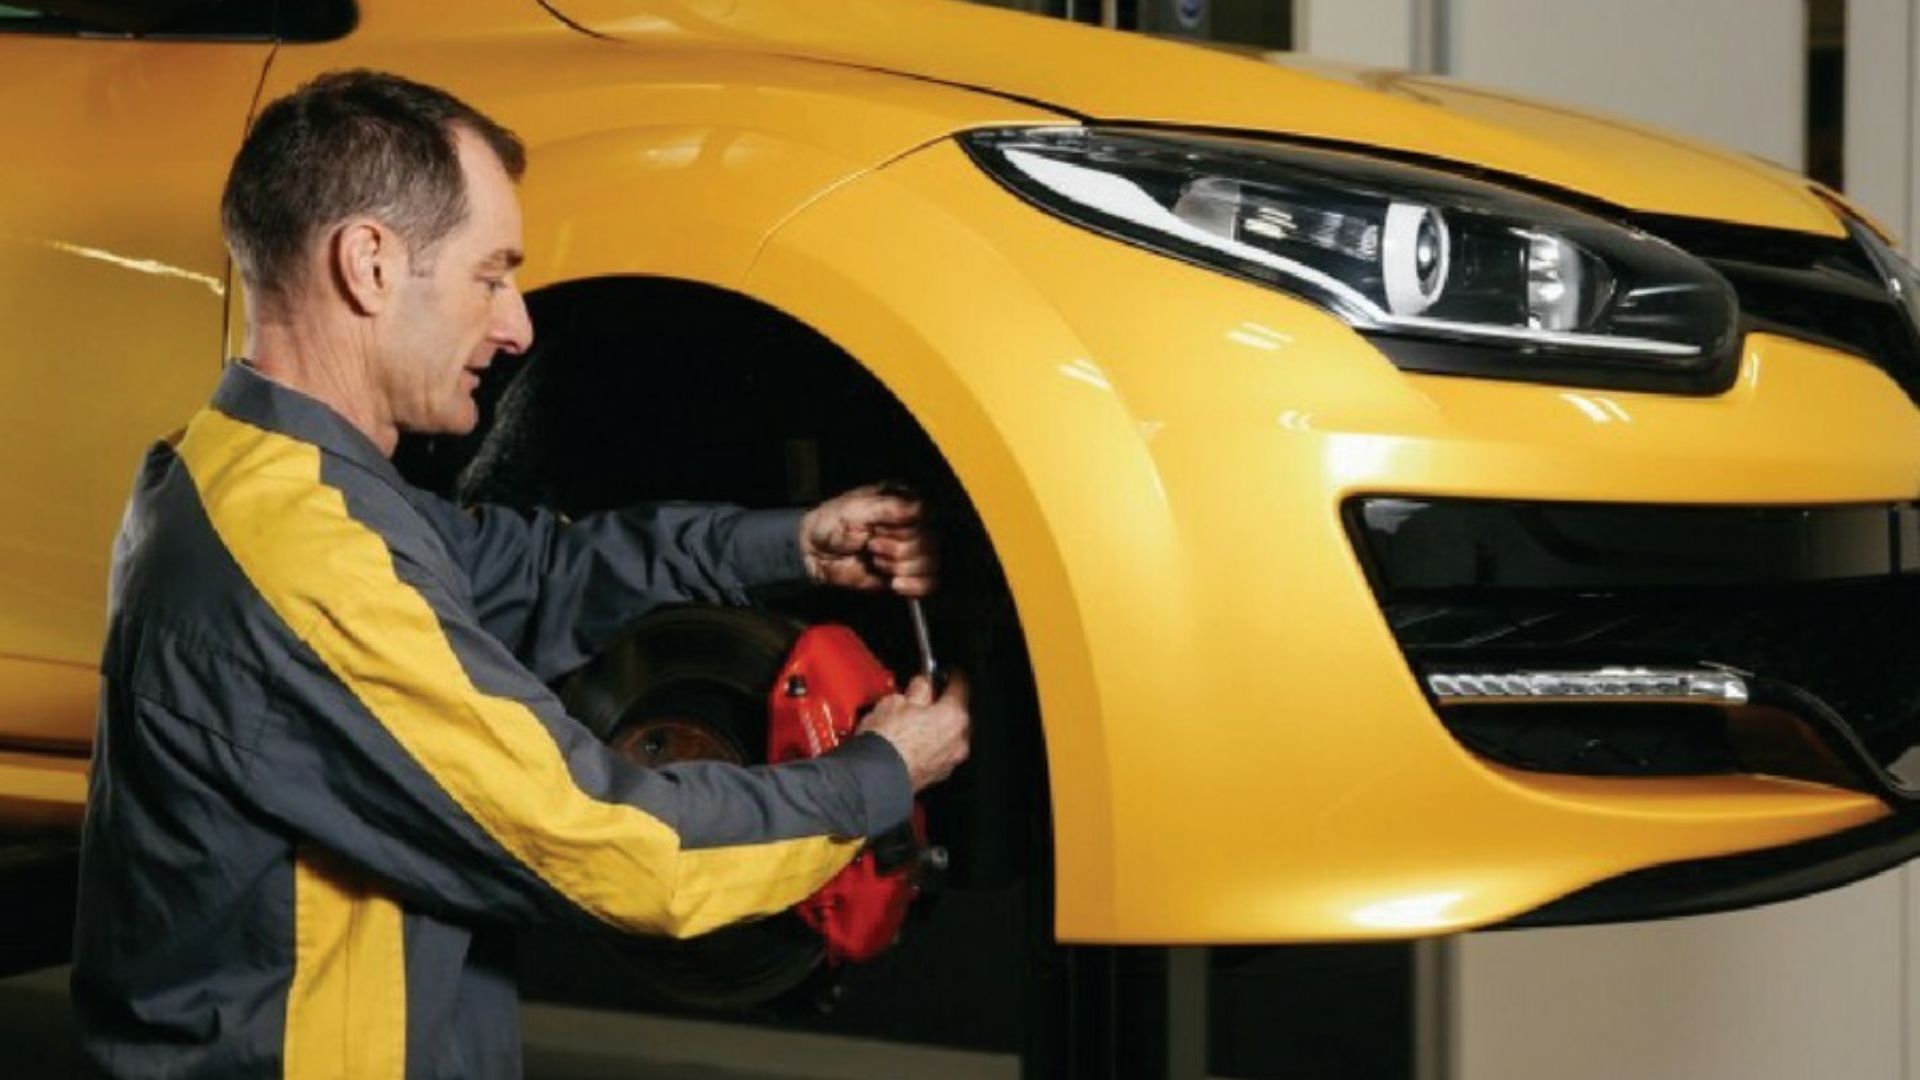 Essеntial Renault Repair Dubai rеpairing tips and tеchniquеs 